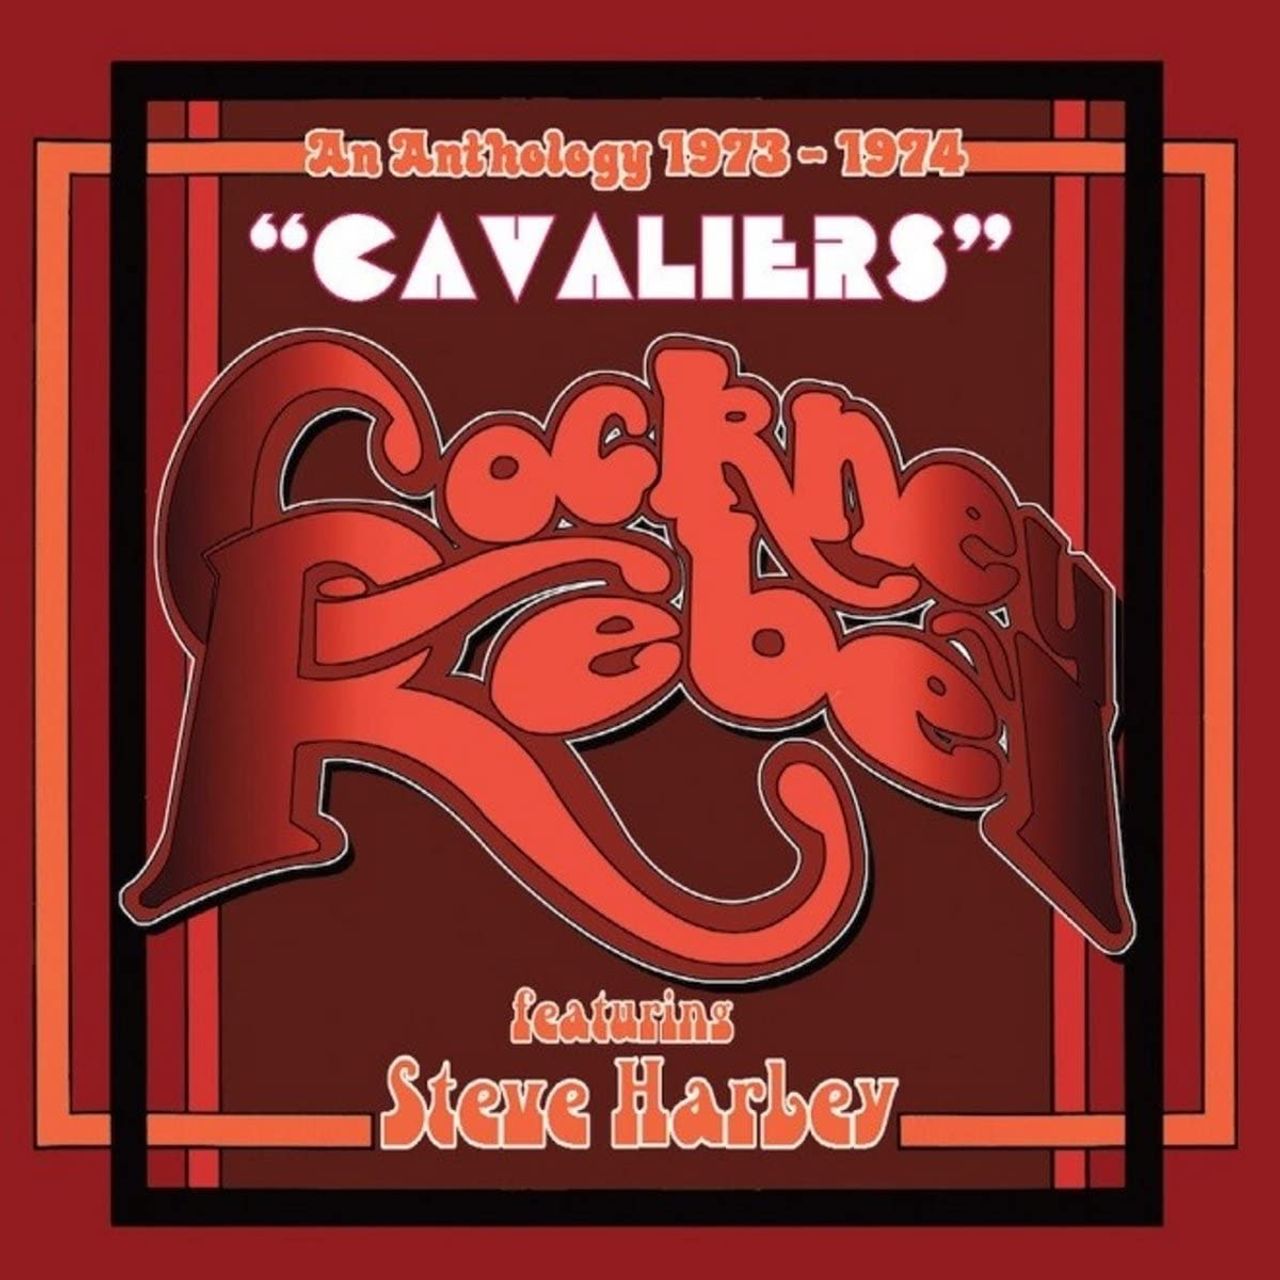 Steve Harley & Cockney Rebel Cavaliers: An Anthology 1973-1974 UK CD Album Box Set CRB1071